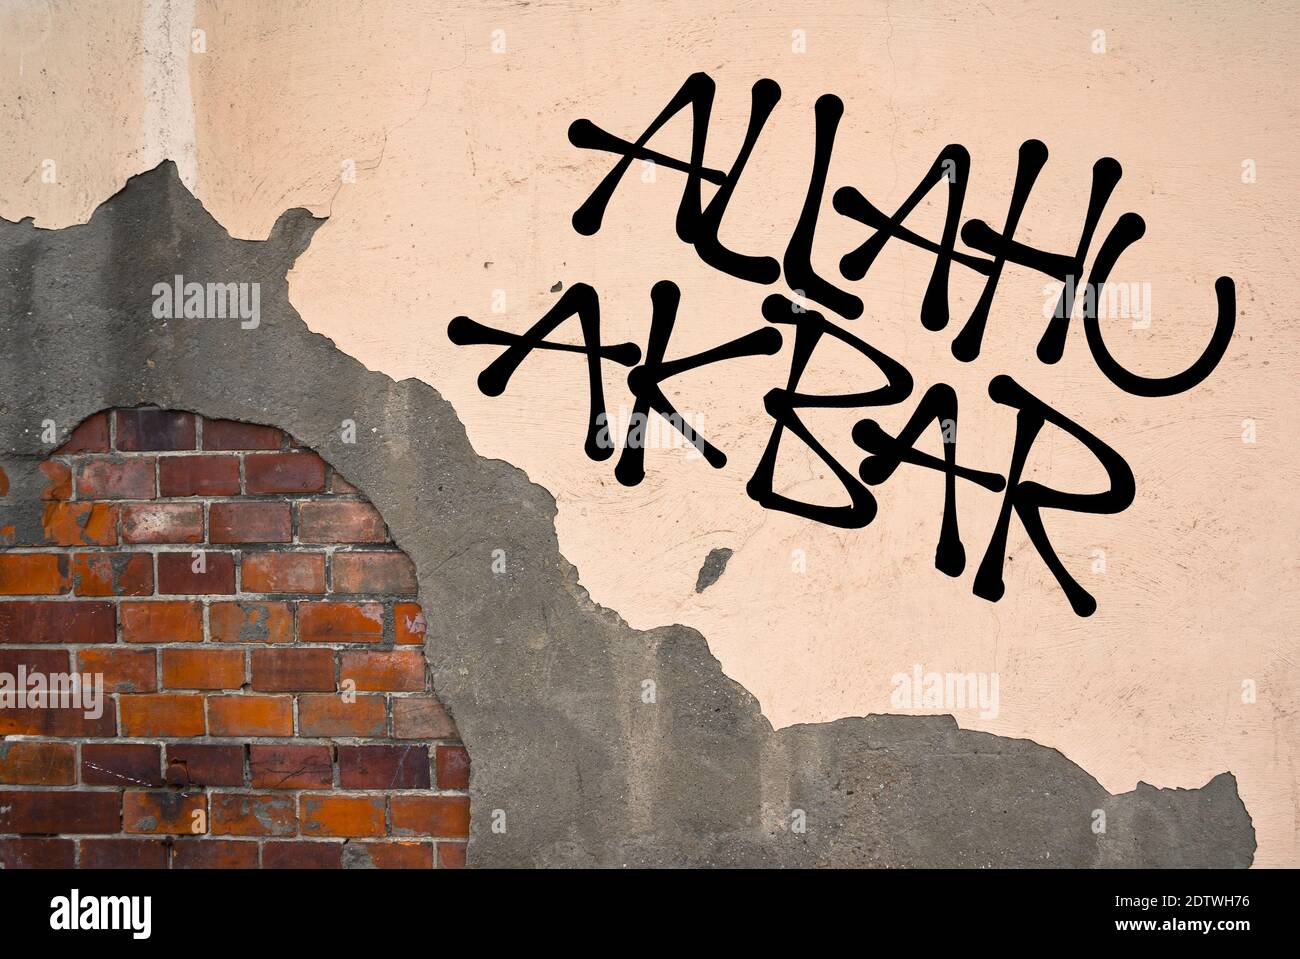 Allahu Akbar - graffiti scritti a mano spruzzati sul muro, estetica anarchica - islam ed espressione della fede religiosa in Dio da parte di musulmani (testo arabo Foto Stock